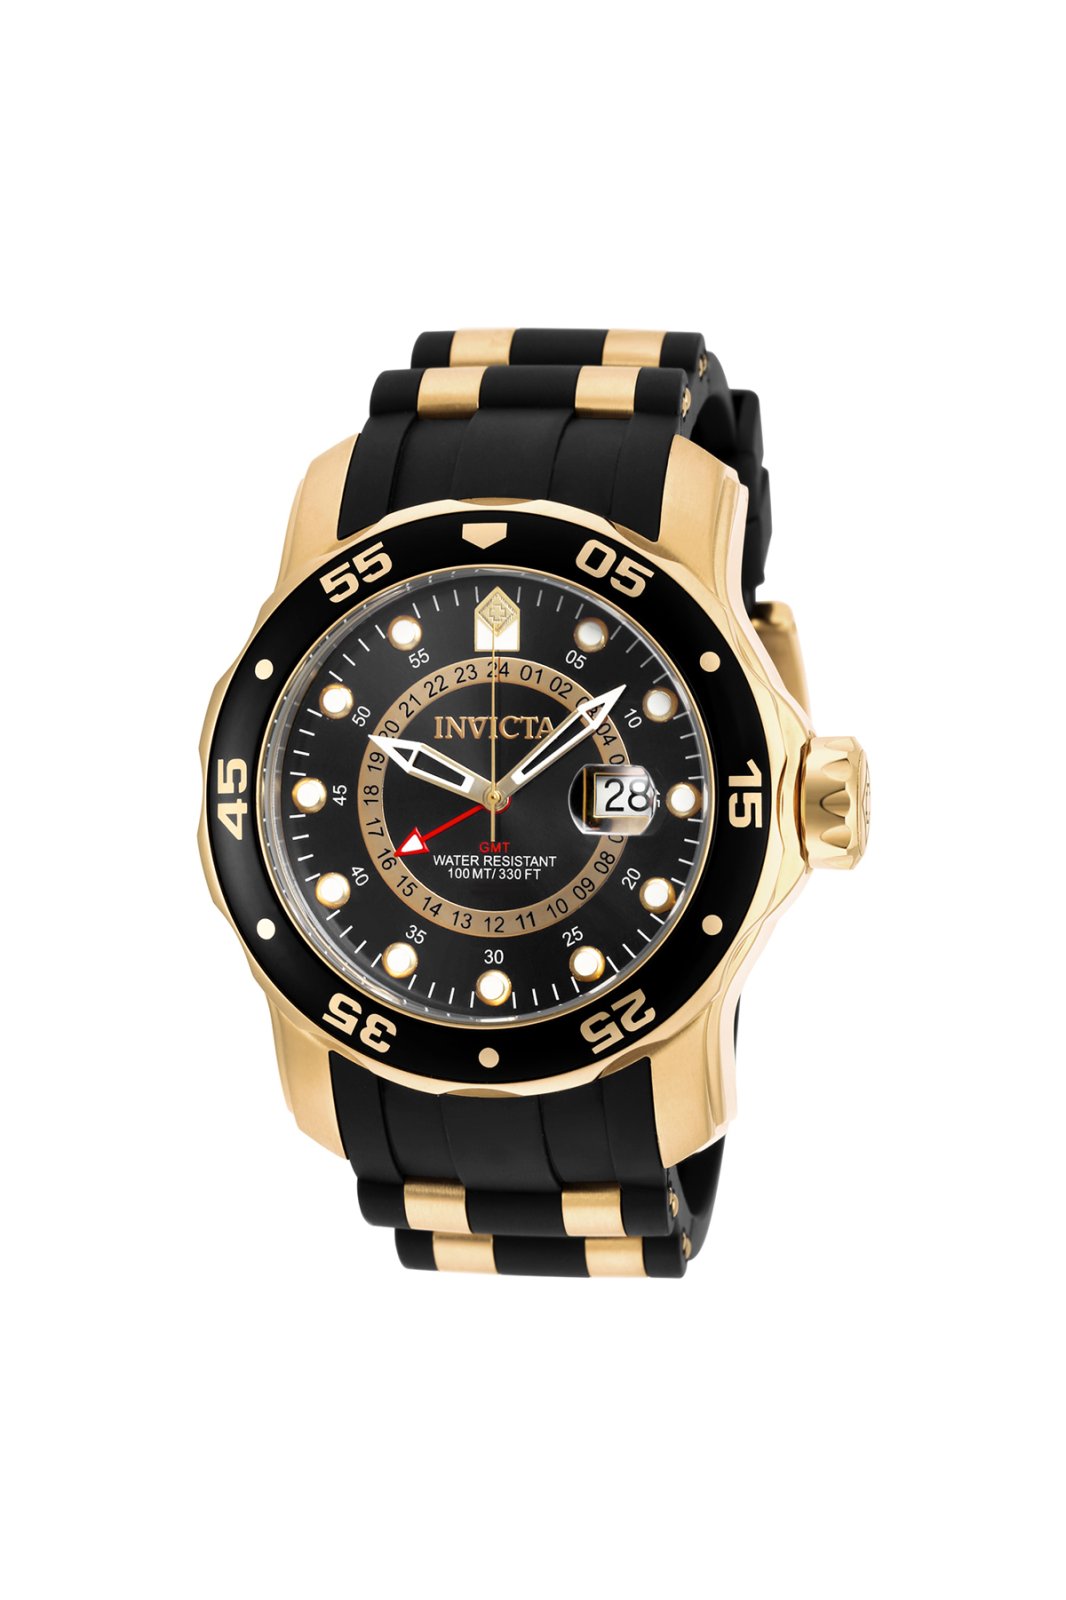 Invicta Pro Diver - SCUBA 6991 Men's Quartz Watch - 48mm